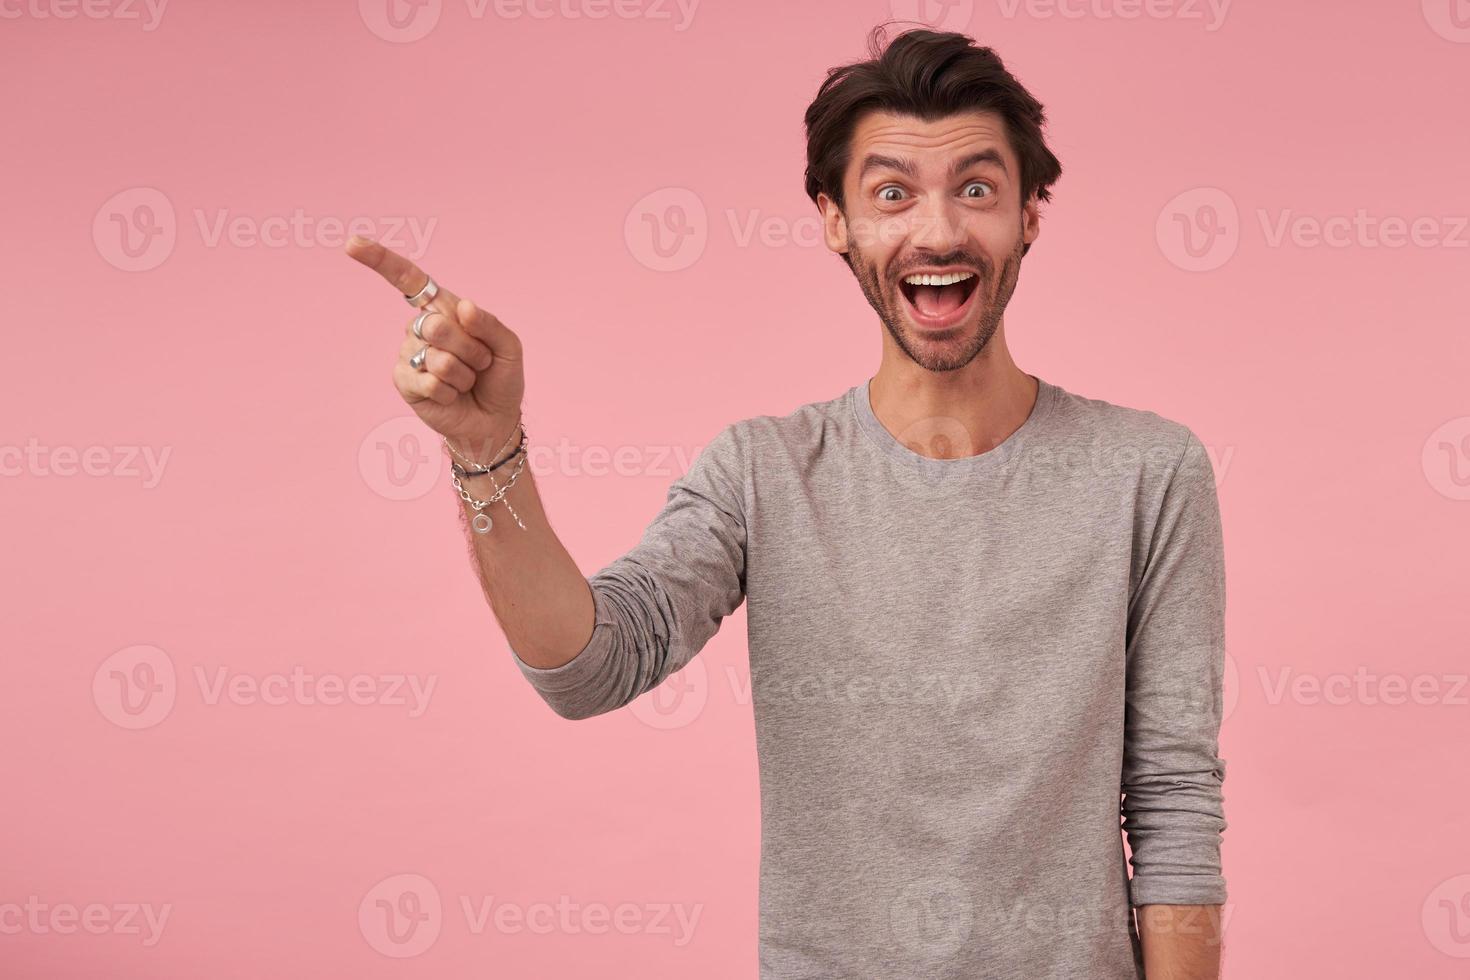 studio-opname van een vrolijke bebaarde man met trendy kapsel die over een roze achtergrond staat, casual kleding draagt, verbaasd naar de camera kijkt en wenkbrauwen optrekt, opzij wijzend met wijsvinger foto